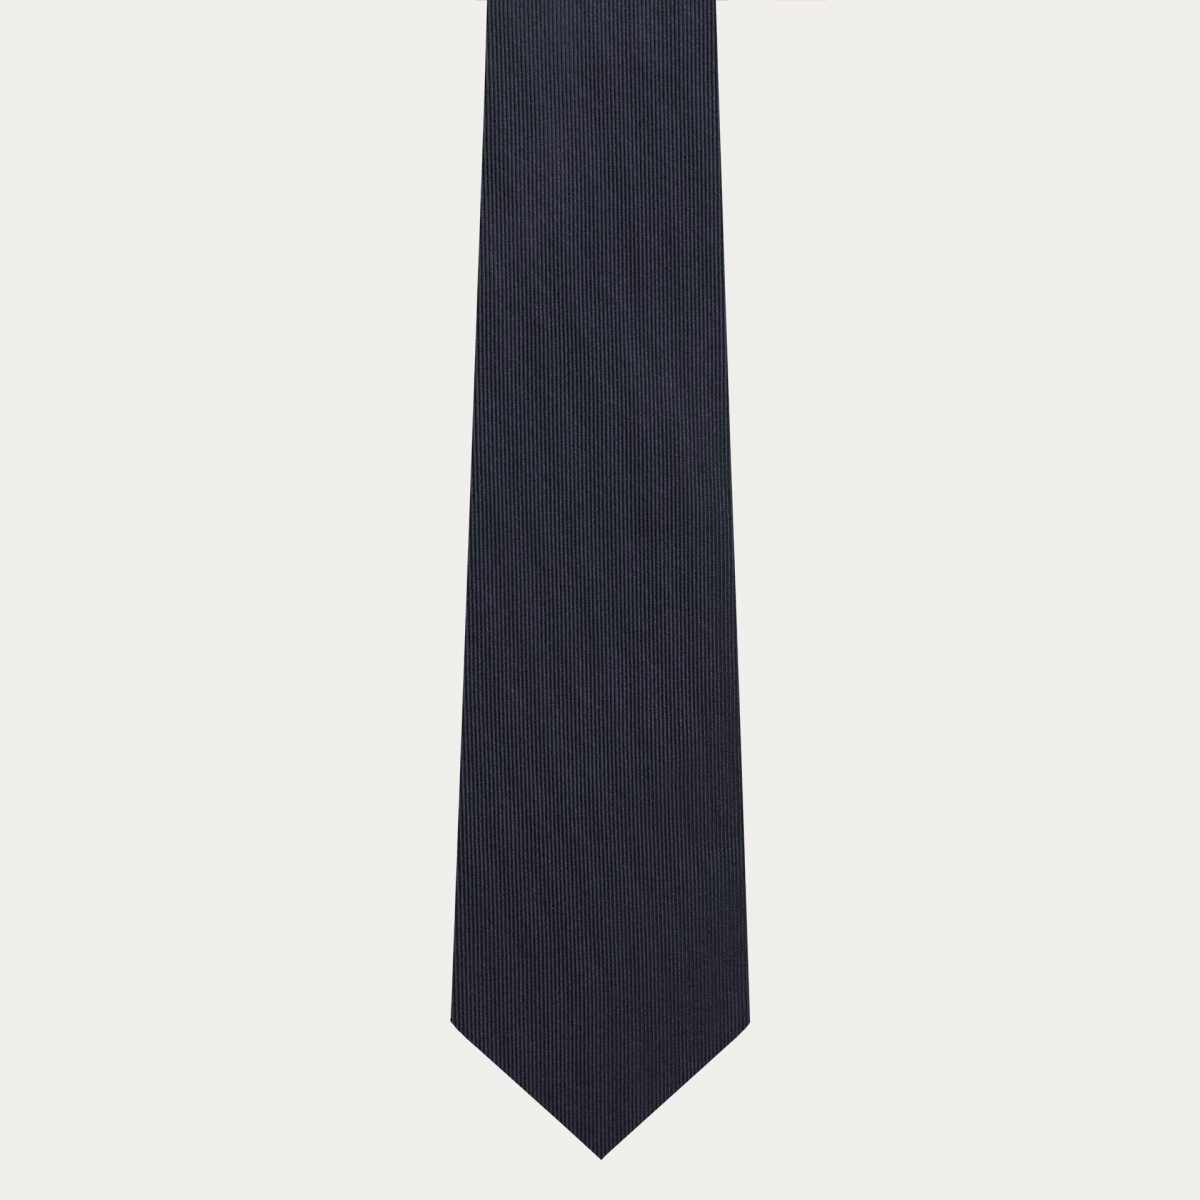 Ensemble coordonné de cravate et de bretelles pour boutons en soie bleu marine